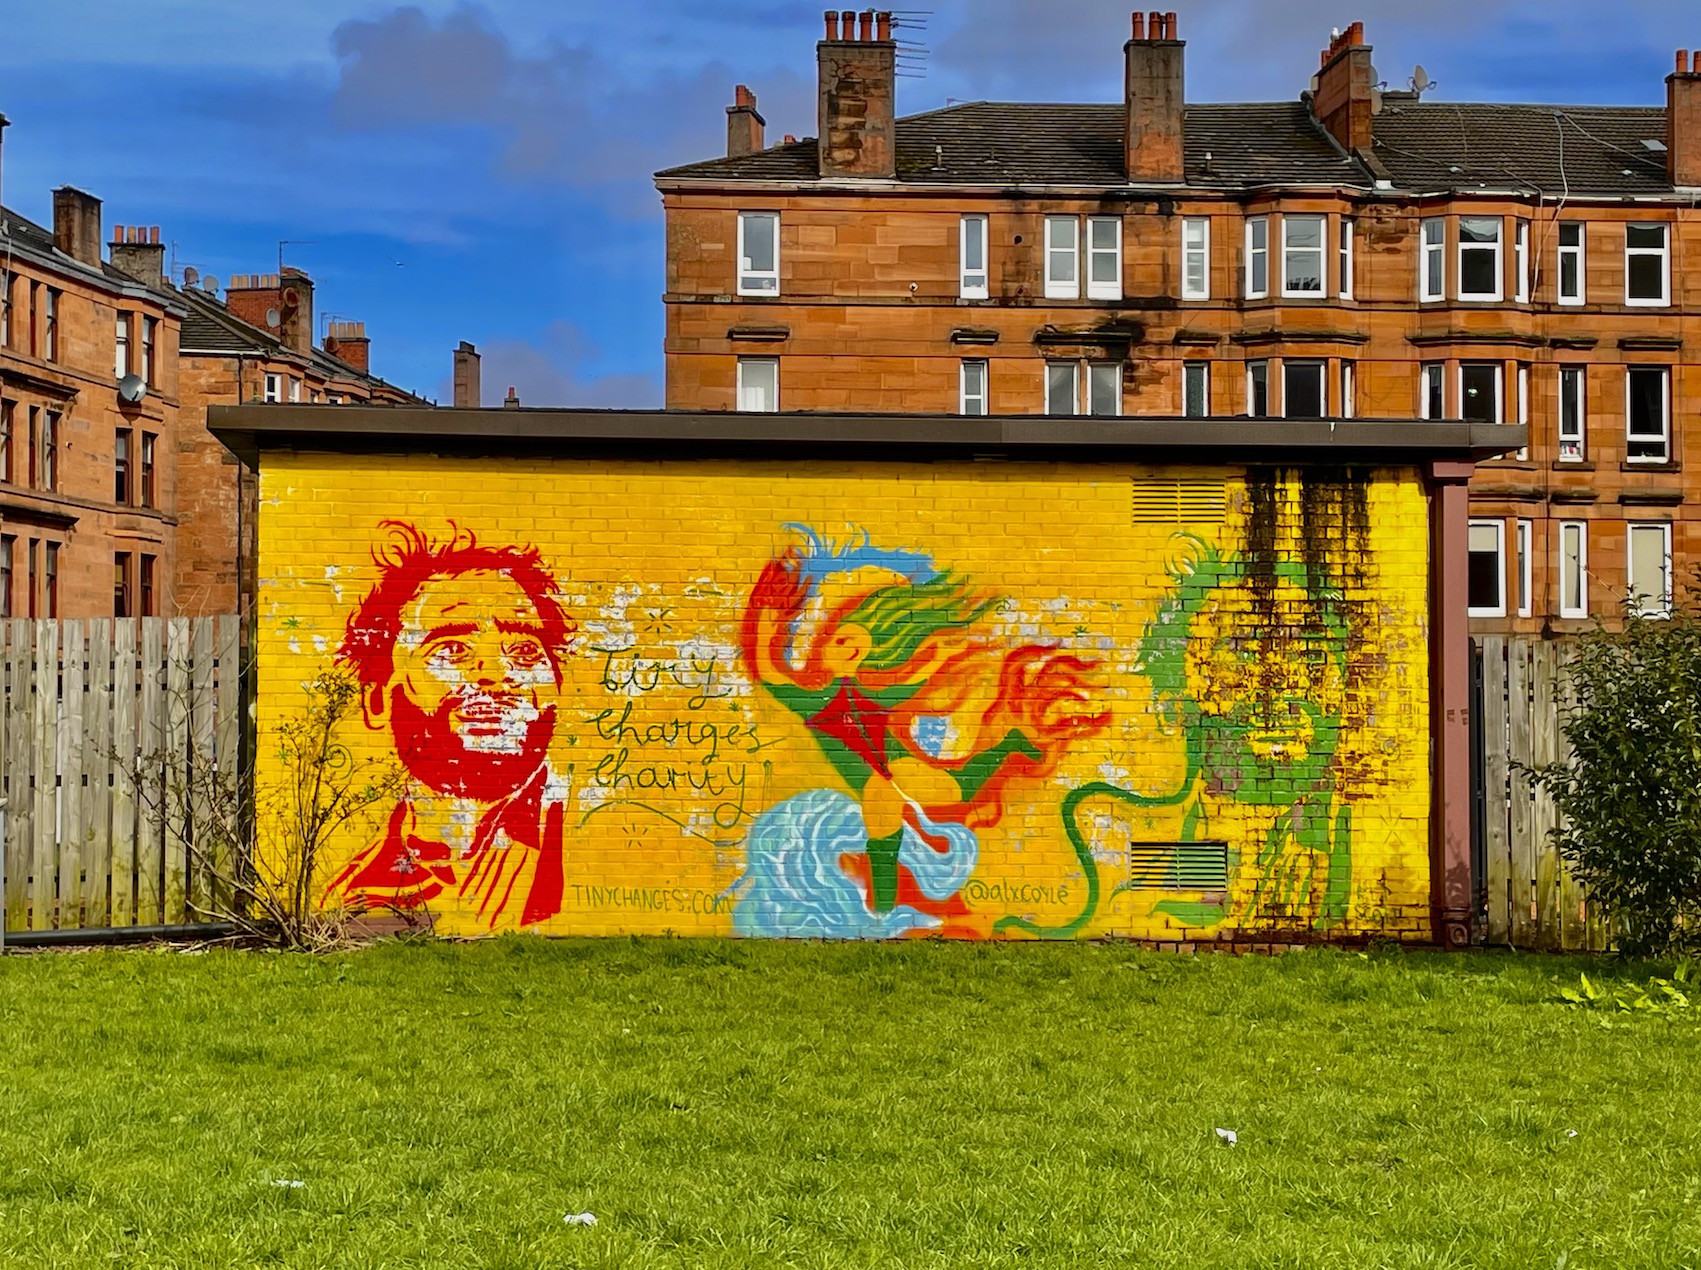 Public art in Glasgow